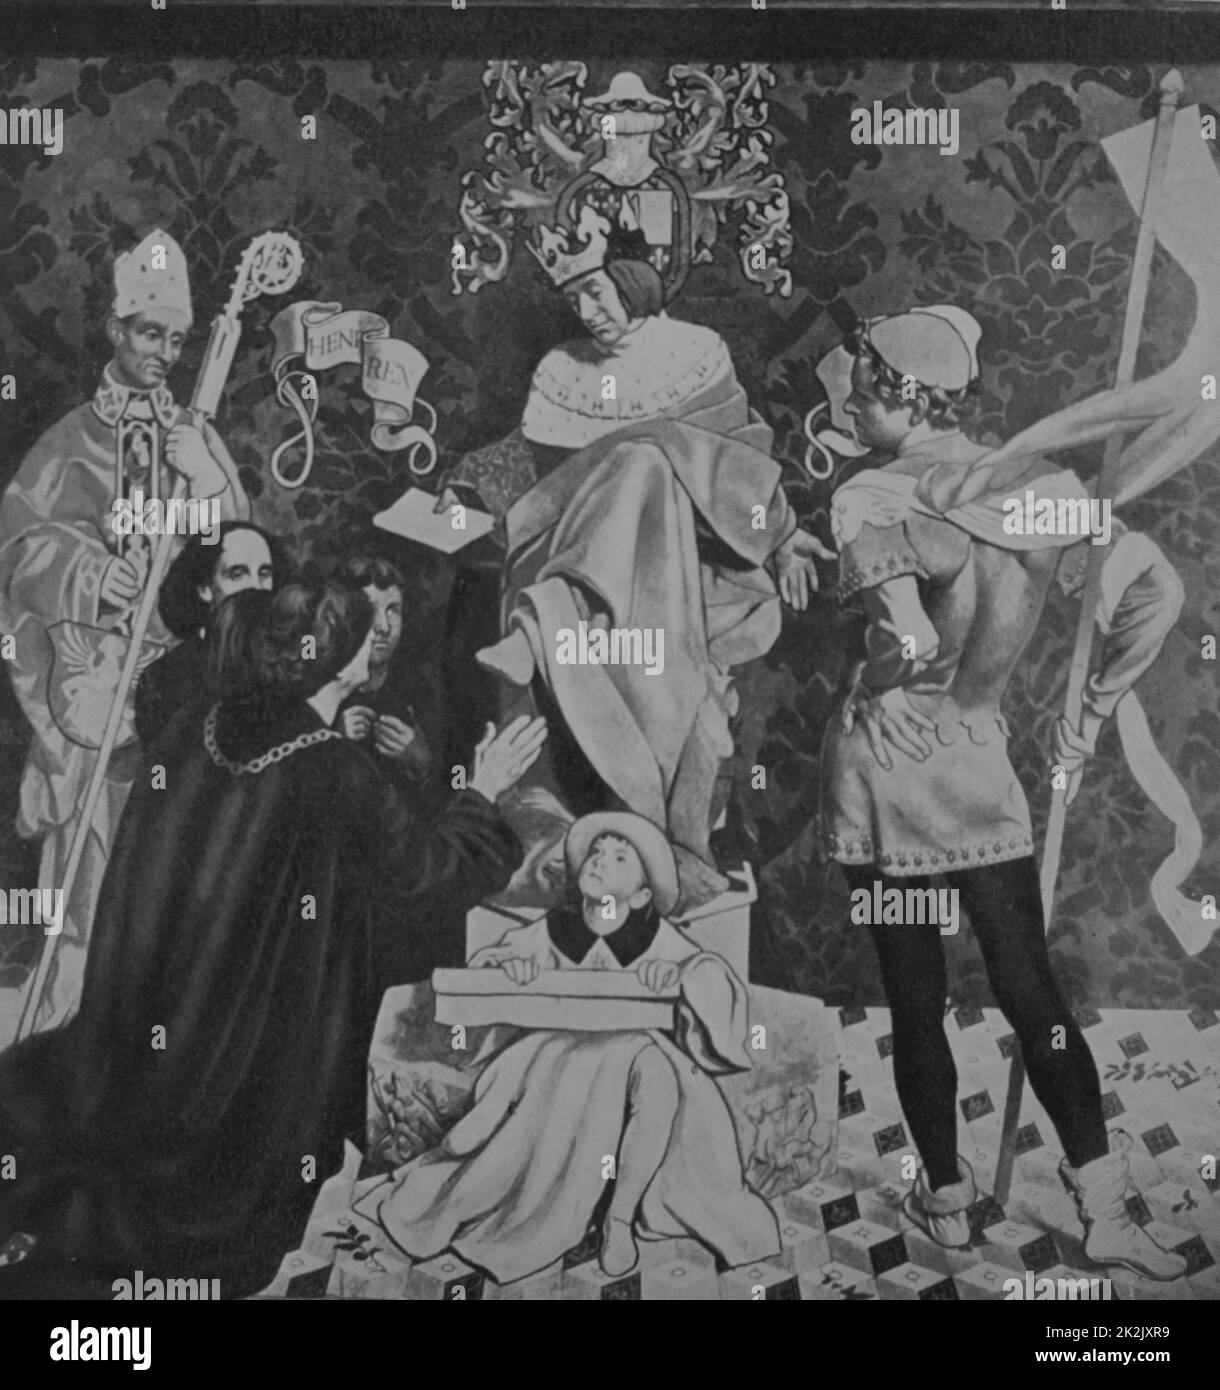 Pintura representando a Enrique VII de Inglaterra (1457-1509) la concesión de John Cabot, un navegante y explorador italiano, una patente. Fecha del siglo XV. Foto de stock